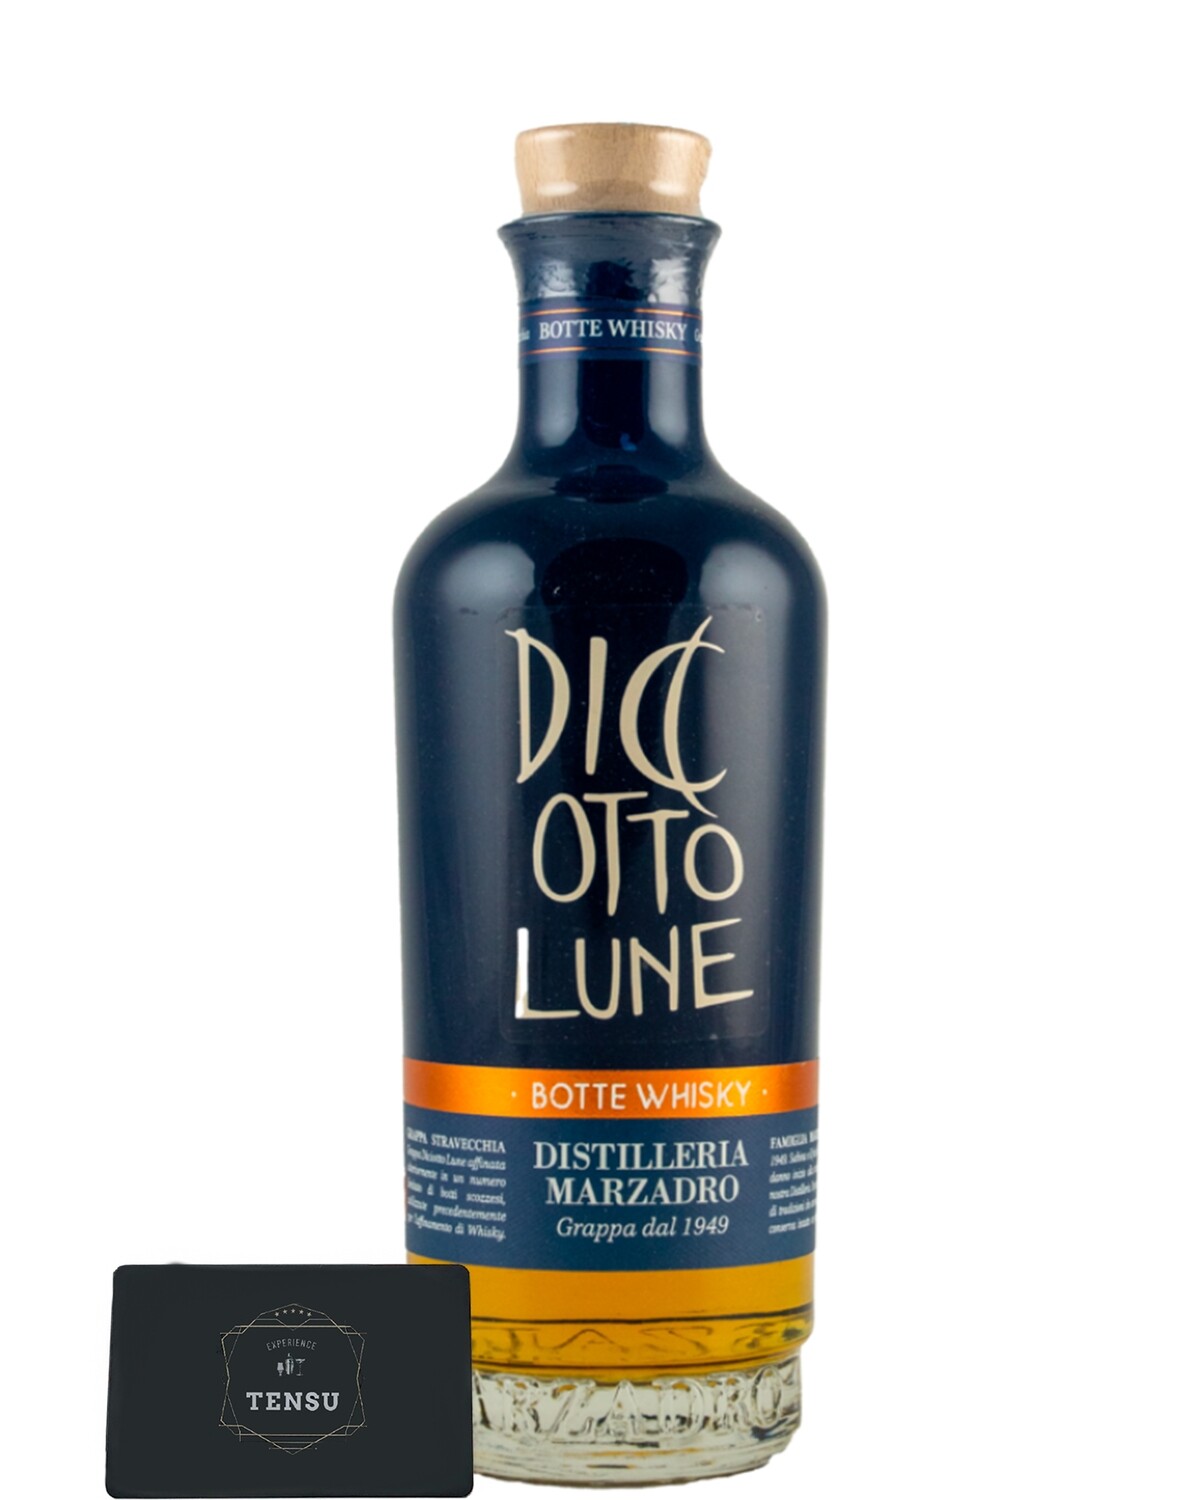 Grappa Marzadro Diciotto Lune Botte Whisky 42.0 (70CL) "OB"